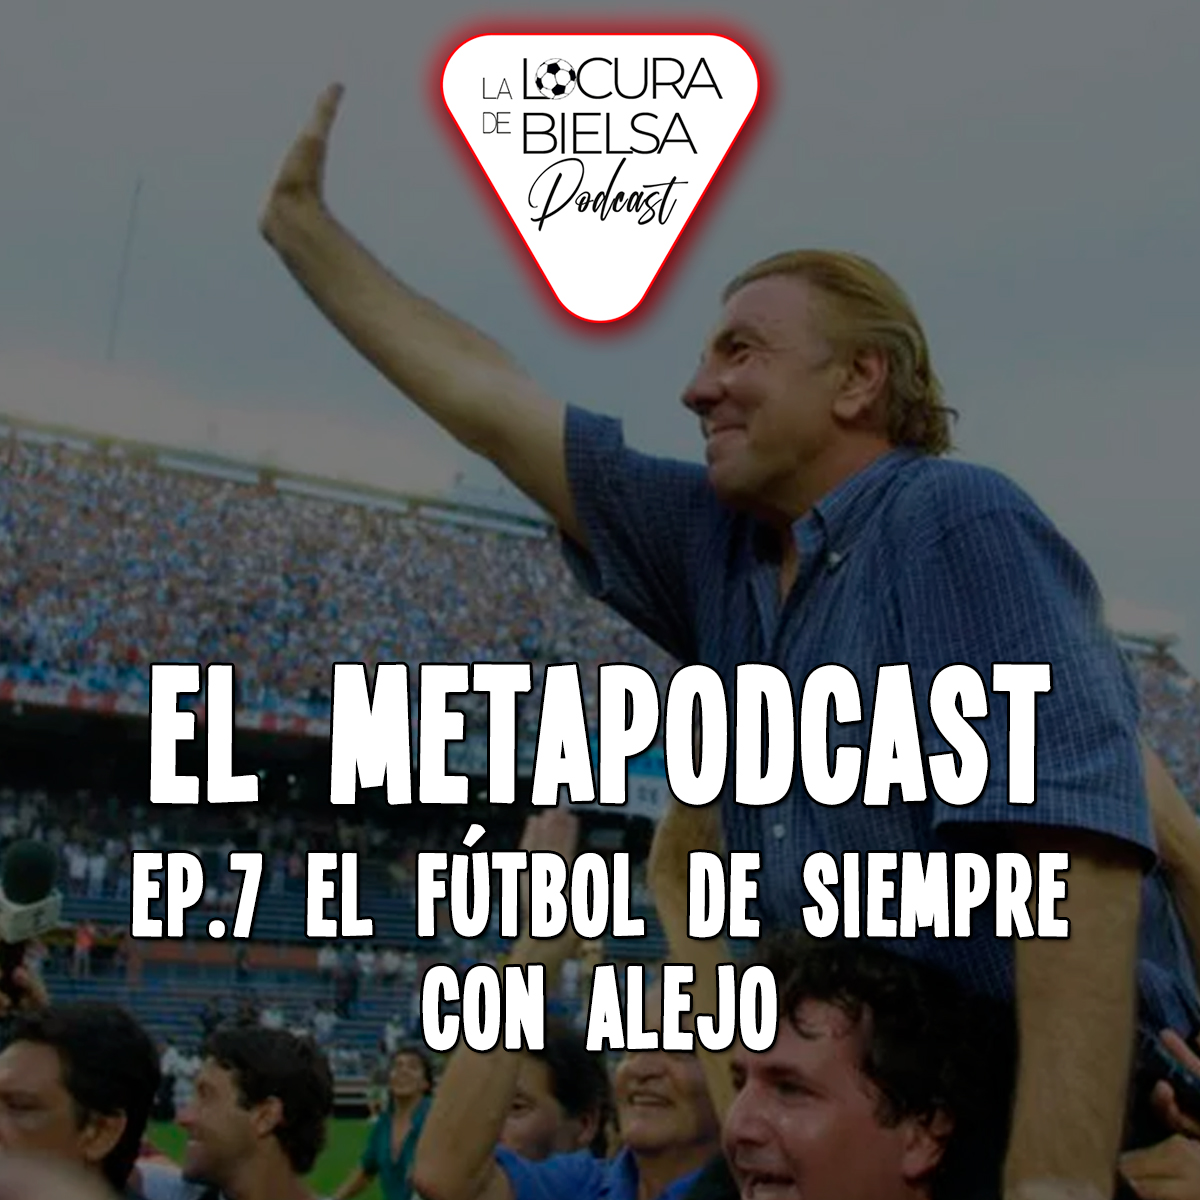 Portada-Metapodcast-Alejo